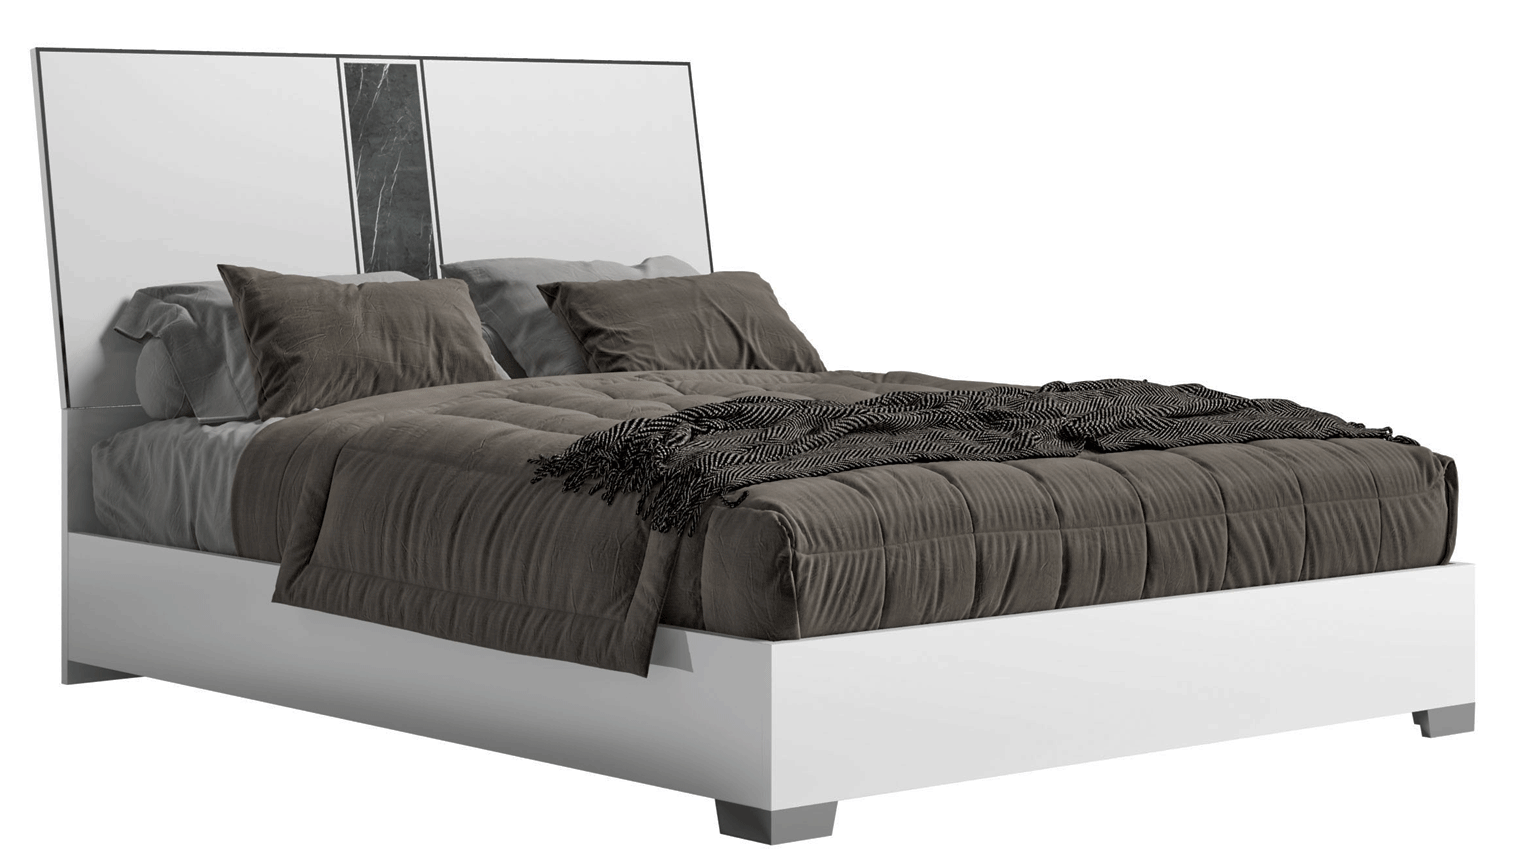 Bedroom Furniture Mattresses, Wooden Frames Bianca Marble Bed